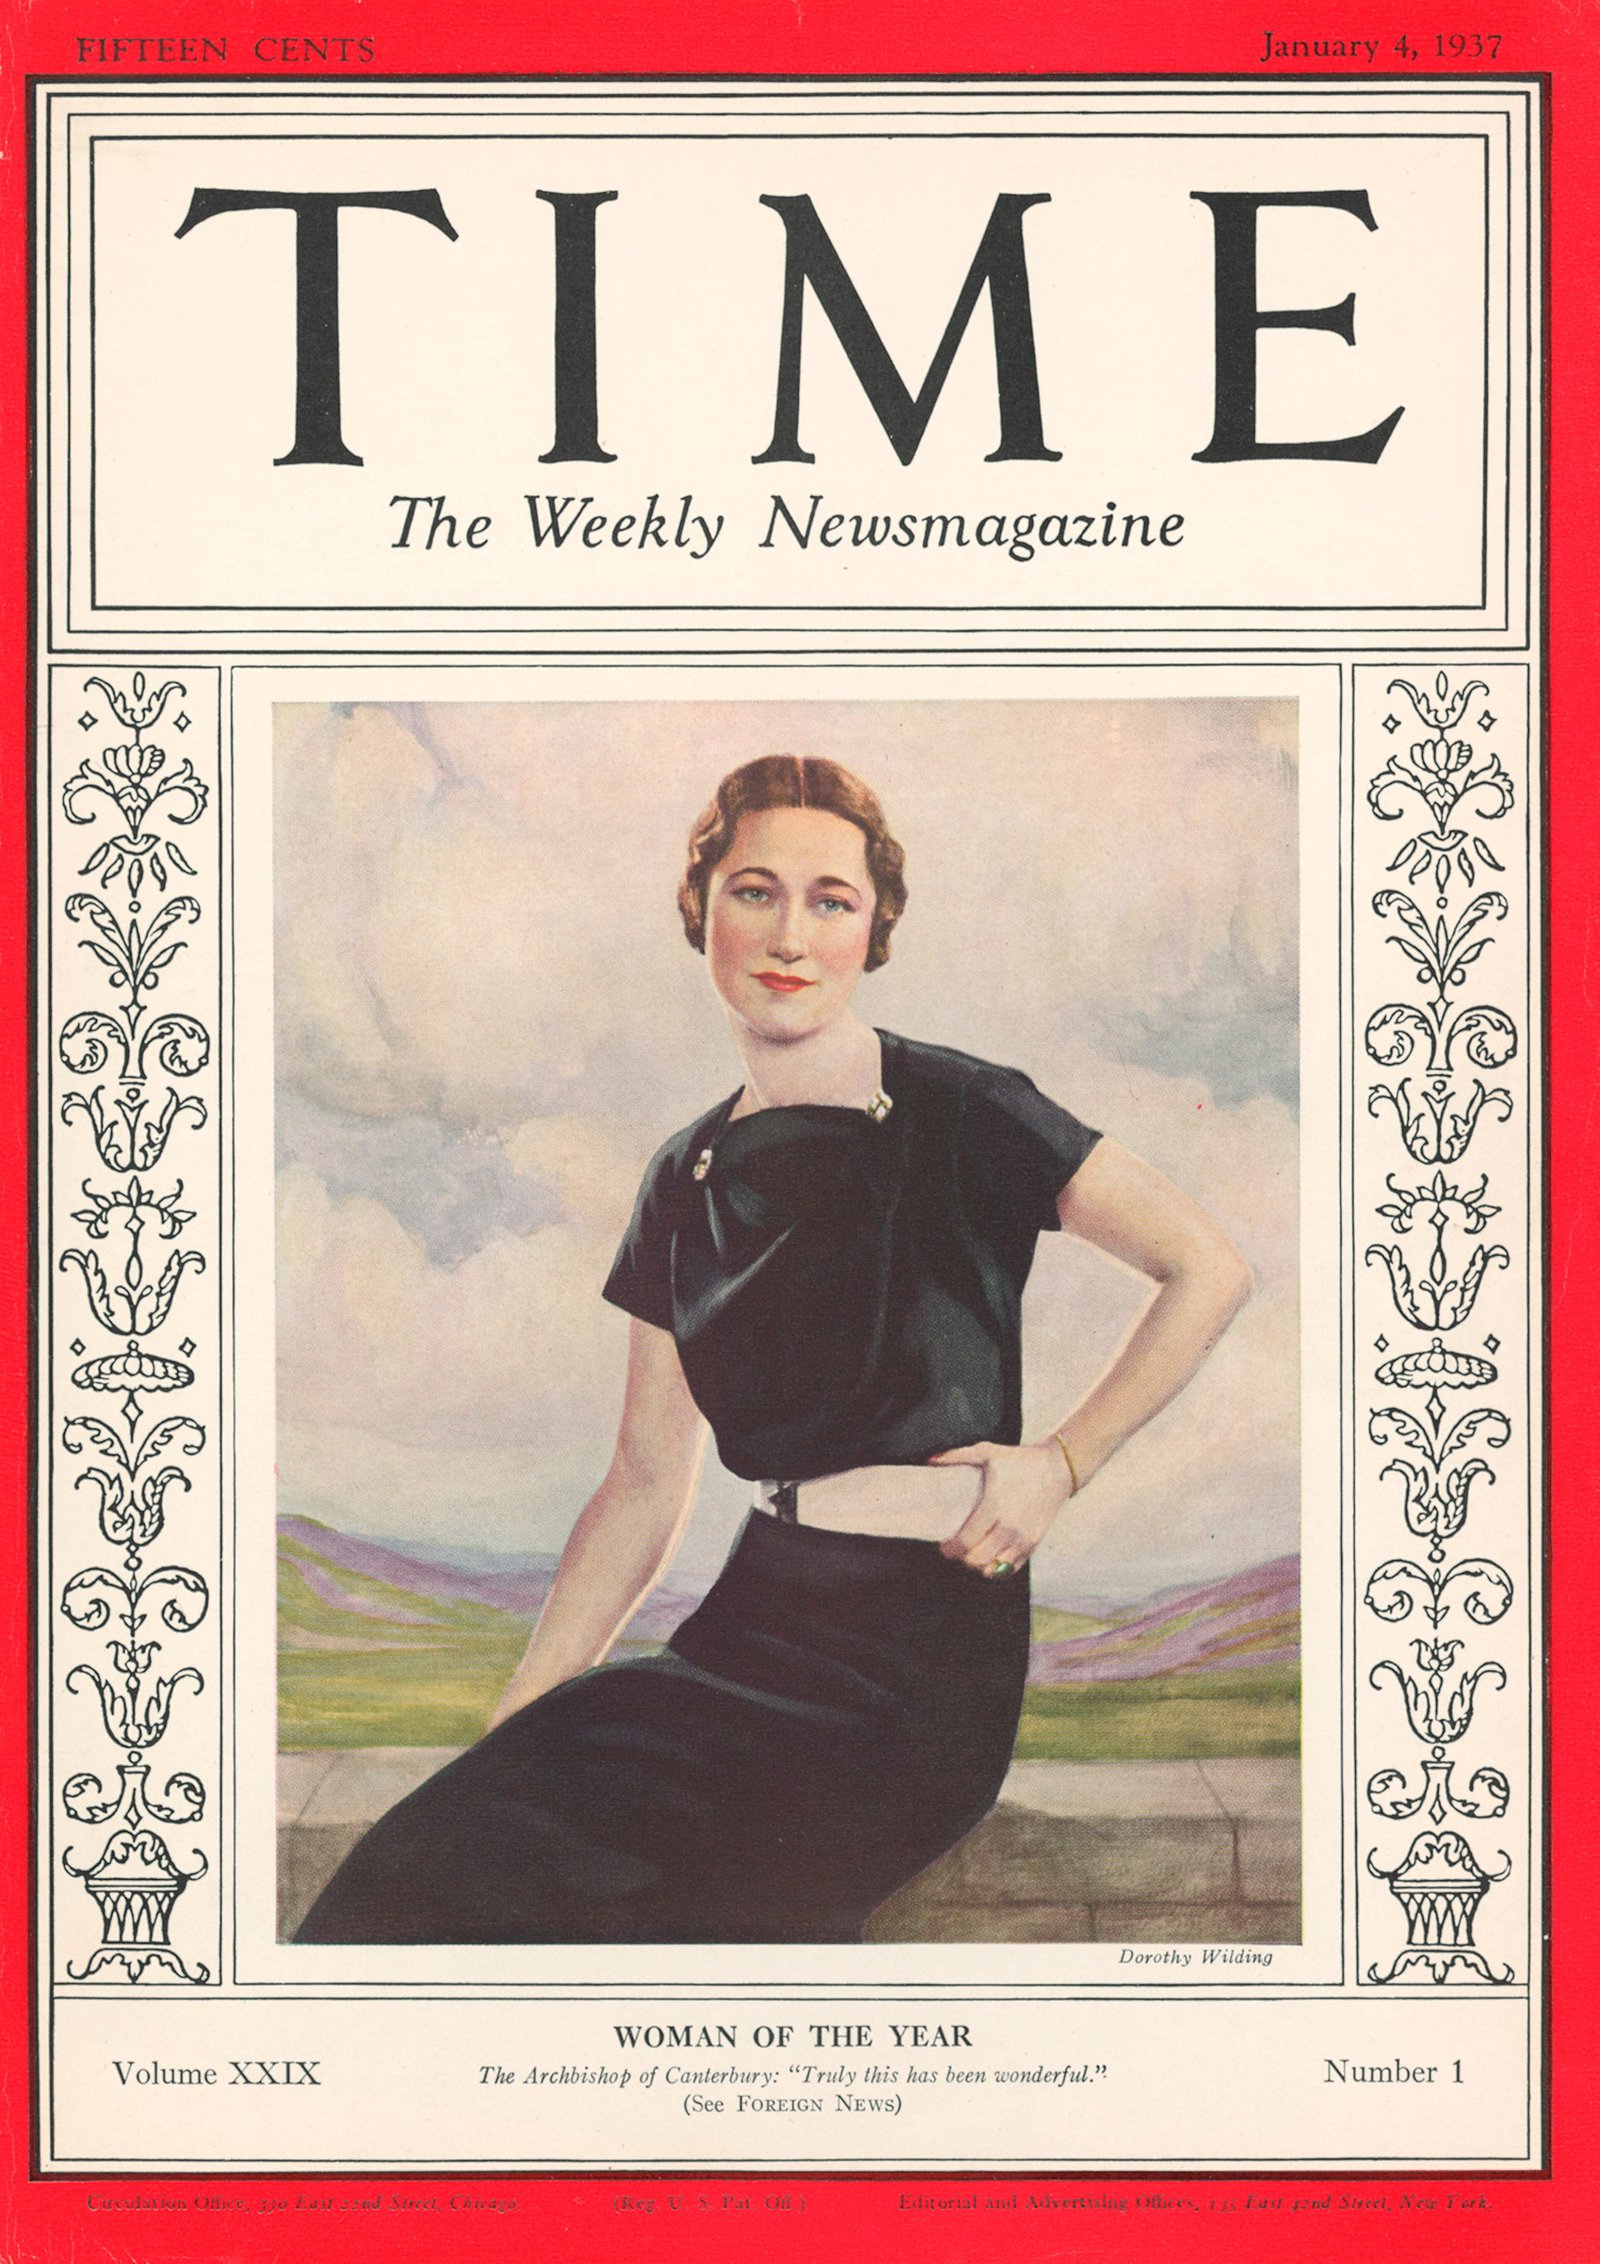 Salt: главное здесь, остальное по вкусу - Уоллис на обложке журнала Time, январь 1937